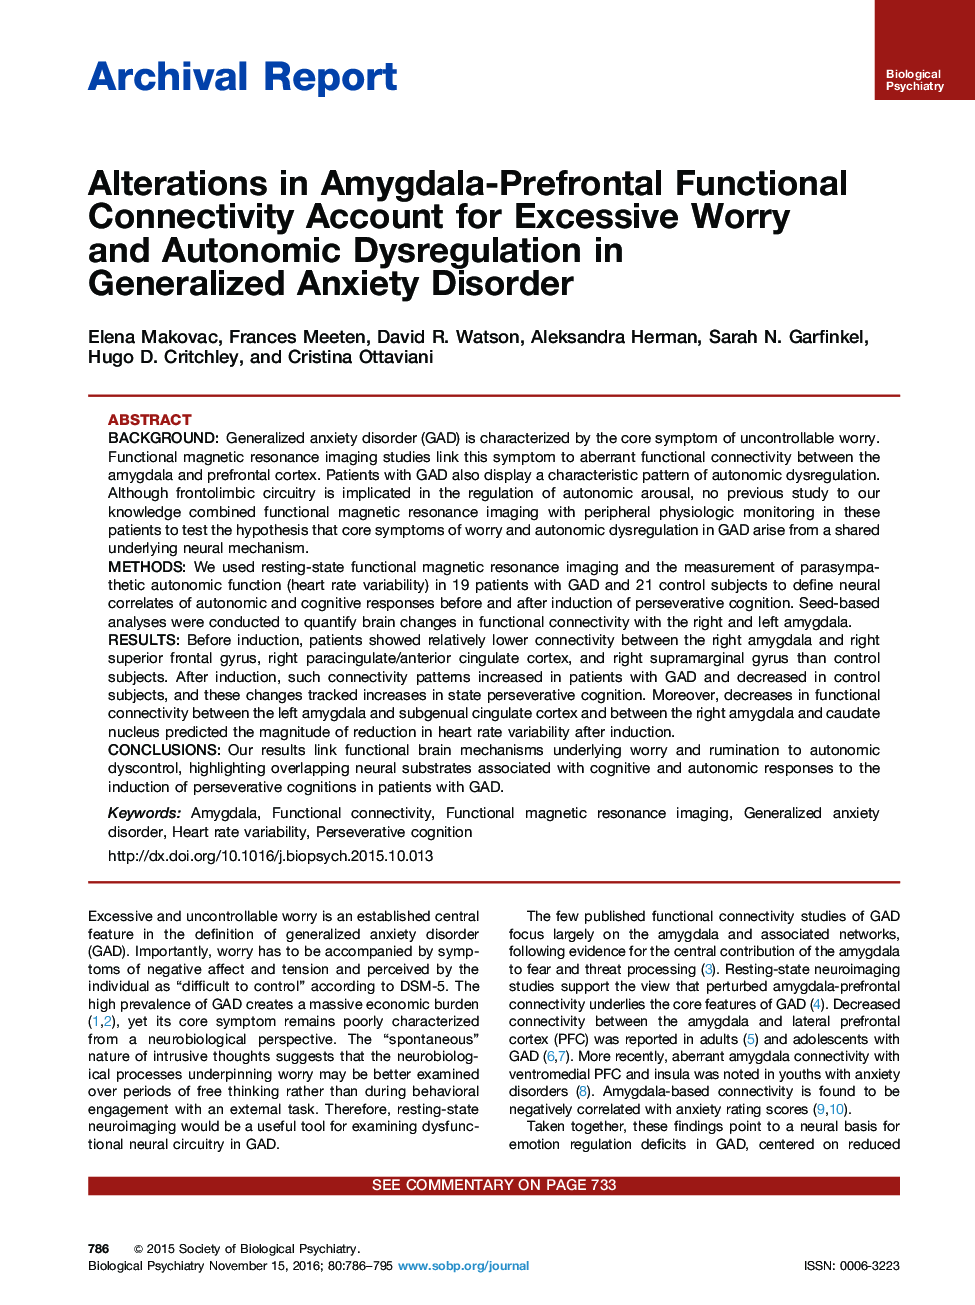 گزارش آرشیو آستانه های حسابداری اتصال آمیگدالا-پیش فرنتن برای اختلال بیش فعالی و اختلال خودمختاری در اختلال اضطراب عمومی 